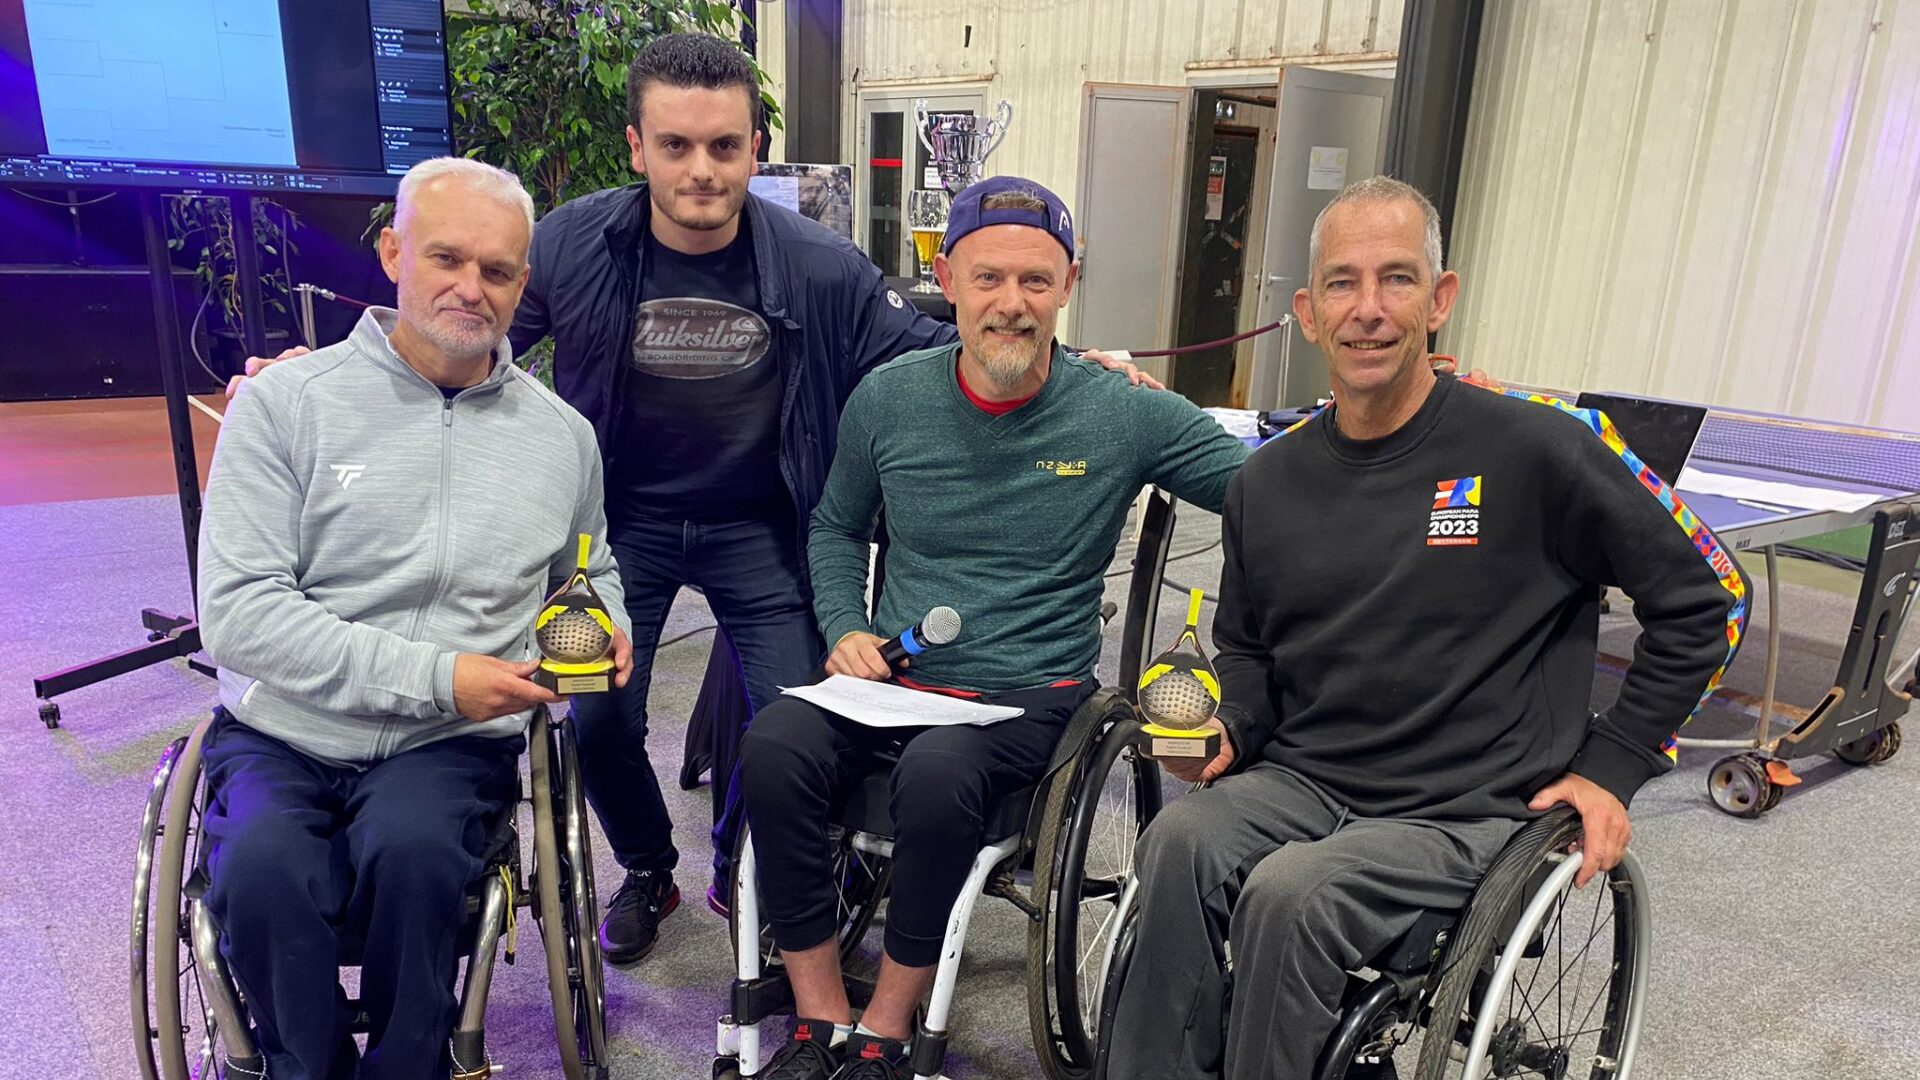 Vos et Ammerlaan remportent le tournoi de padel fauteuil de haut niveau du TSB Valenciennes !